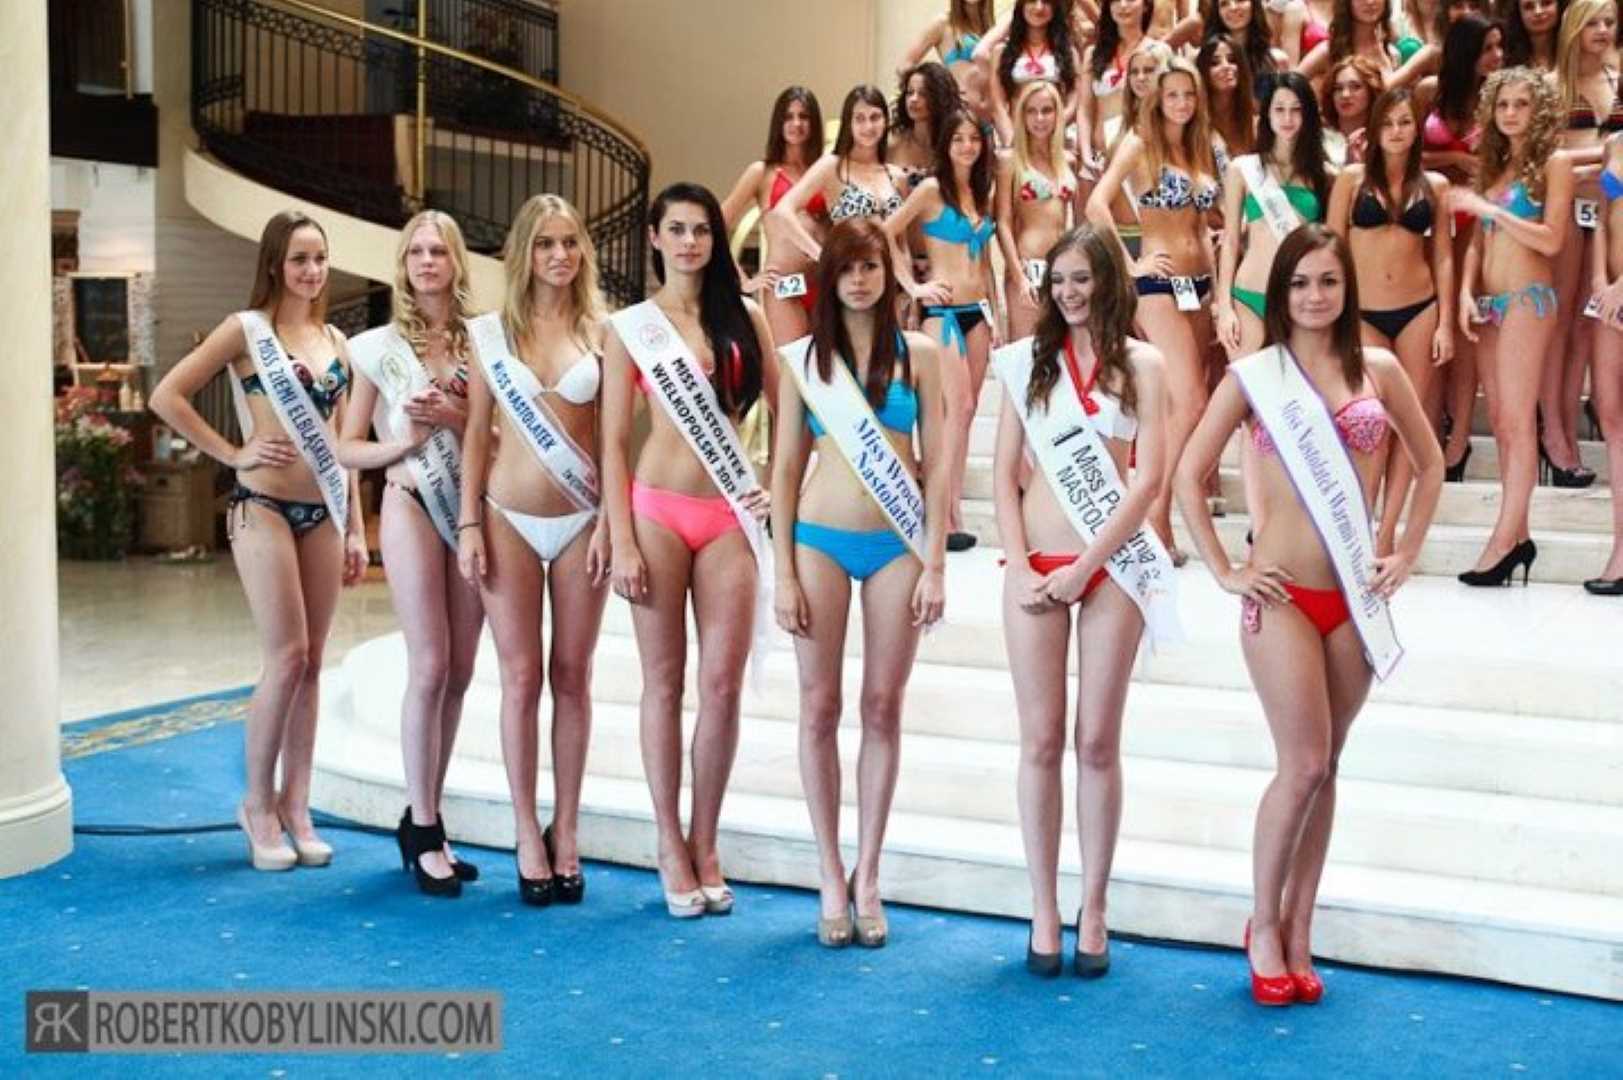 , Nastolatki Miss Warmii i Mazur 2012 na ćwierćfinale Miss Polski, Miss Warmii i Mazur